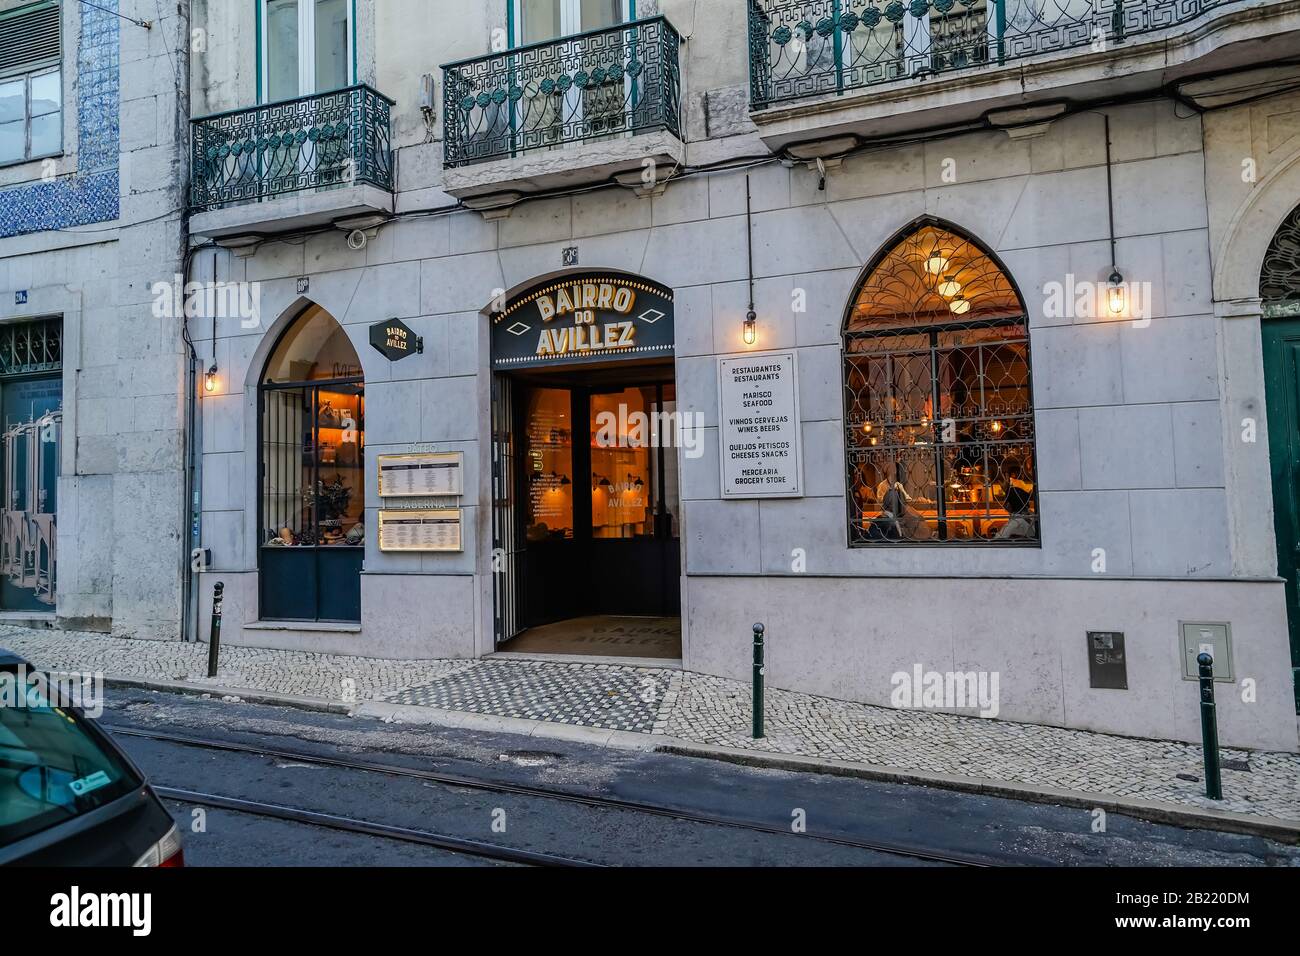 Bairro do Avillez ist ein Fischrestaurant in Lissabon, das für sein blaues Hummergericht berühmt ist Stockfoto